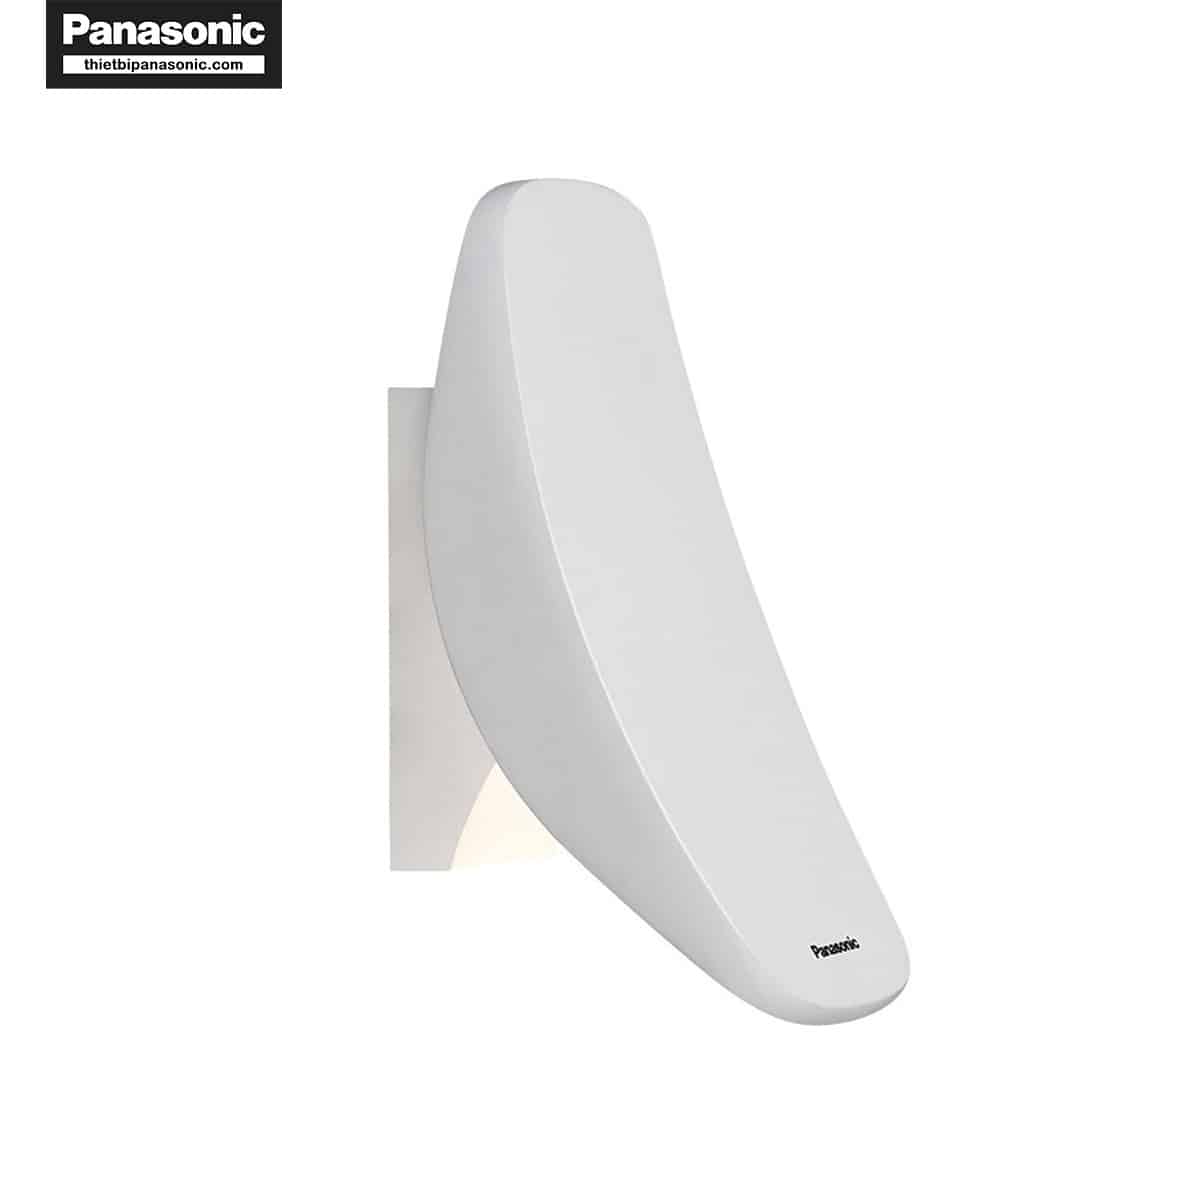 Đèn tường Panasonic HH‑BW050088 có thiết kế như 1 chiếc công tắc